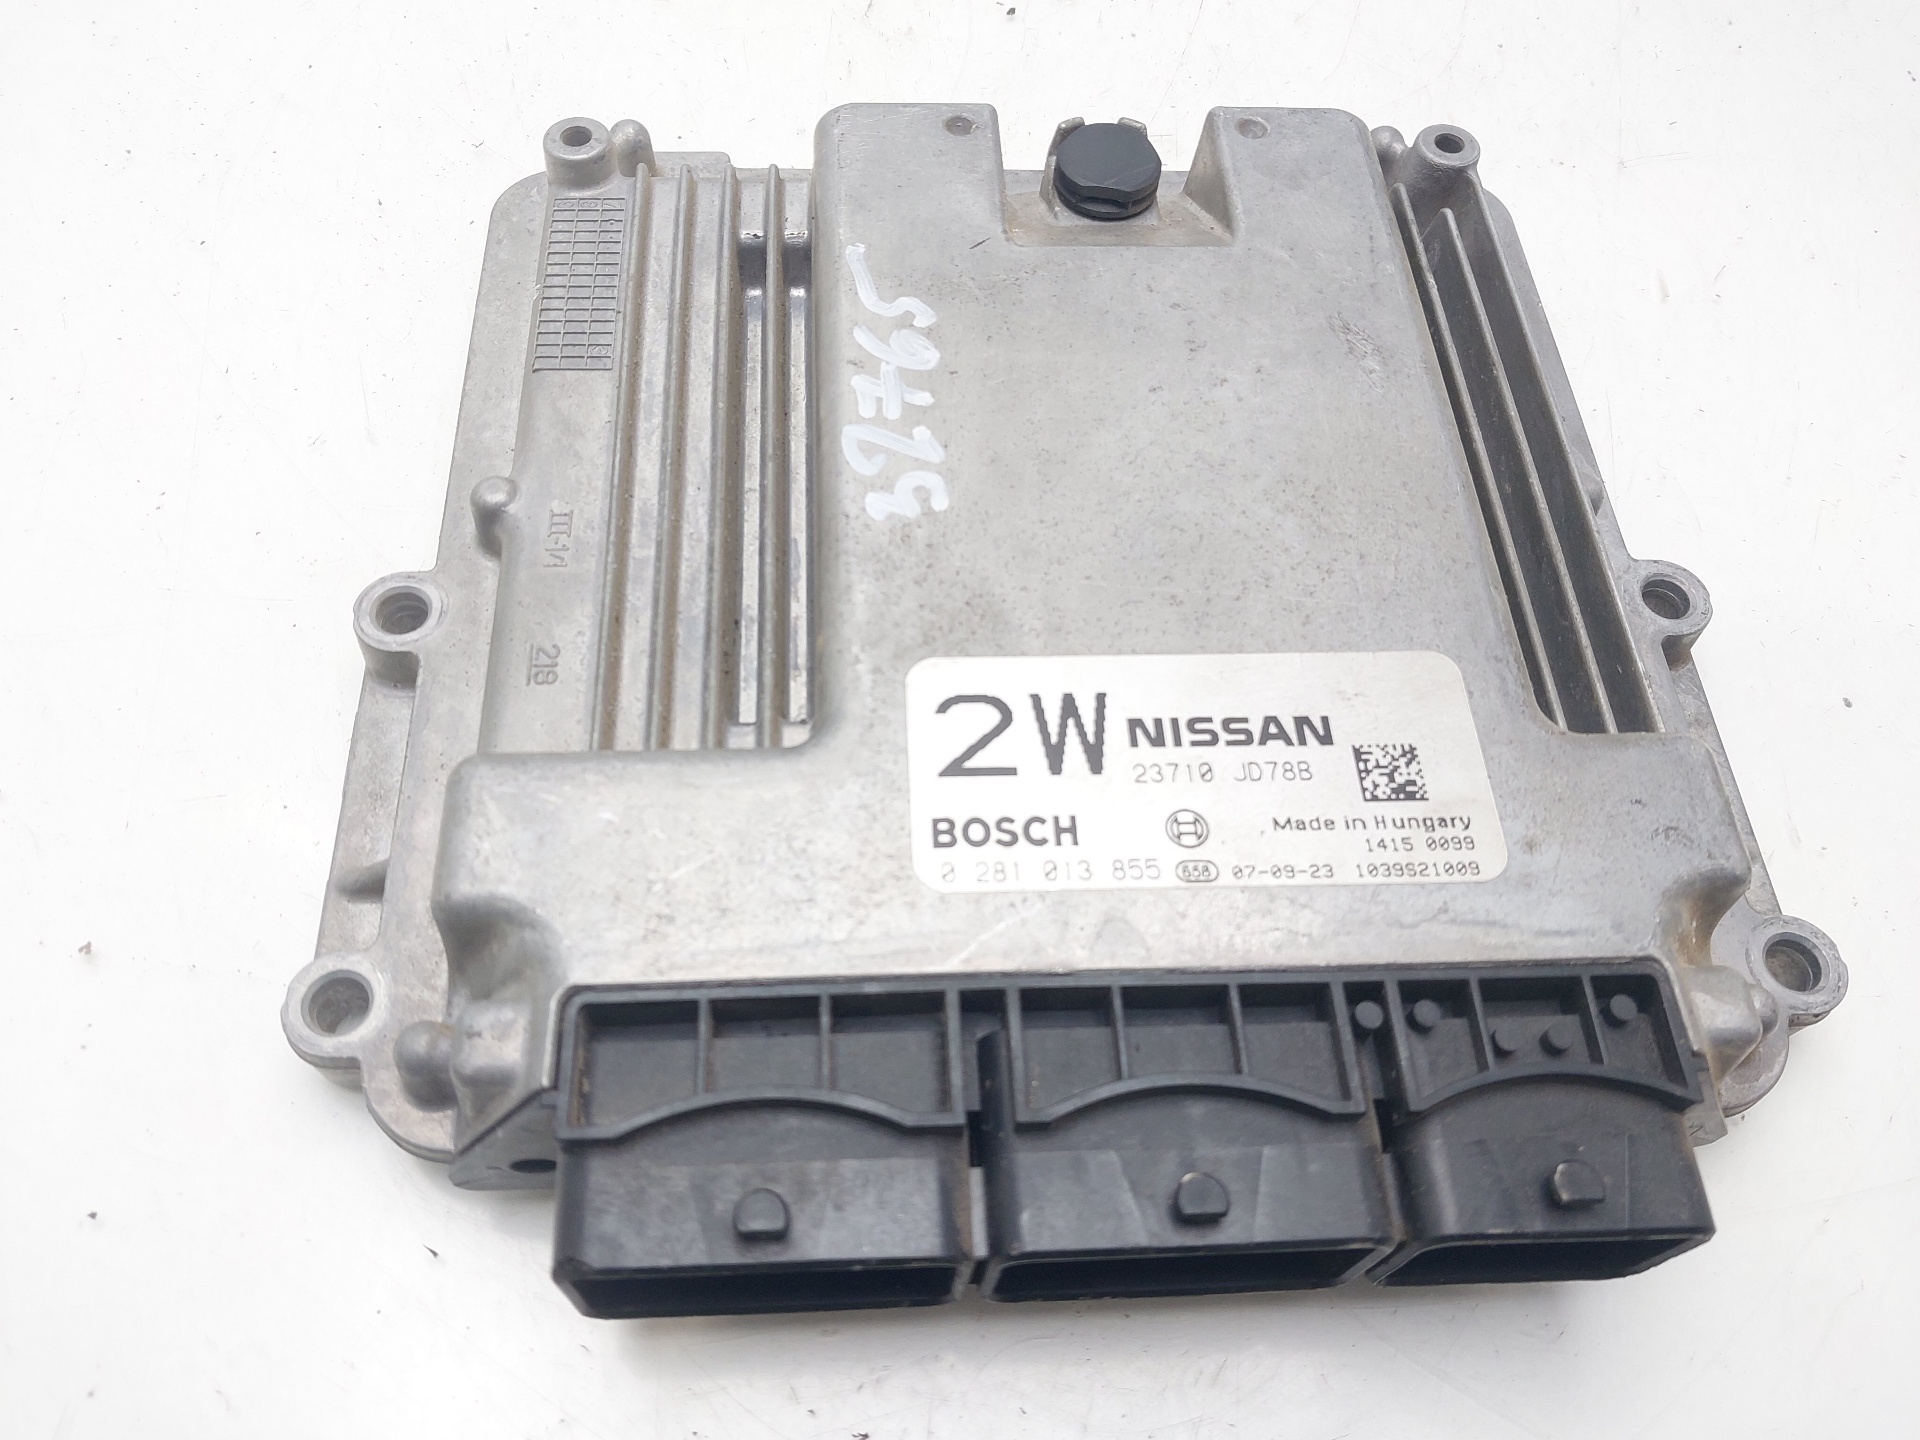 NISSAN Qashqai 1 generation (2007-2014) Блок управления двигателем 23710JD78B 23032477